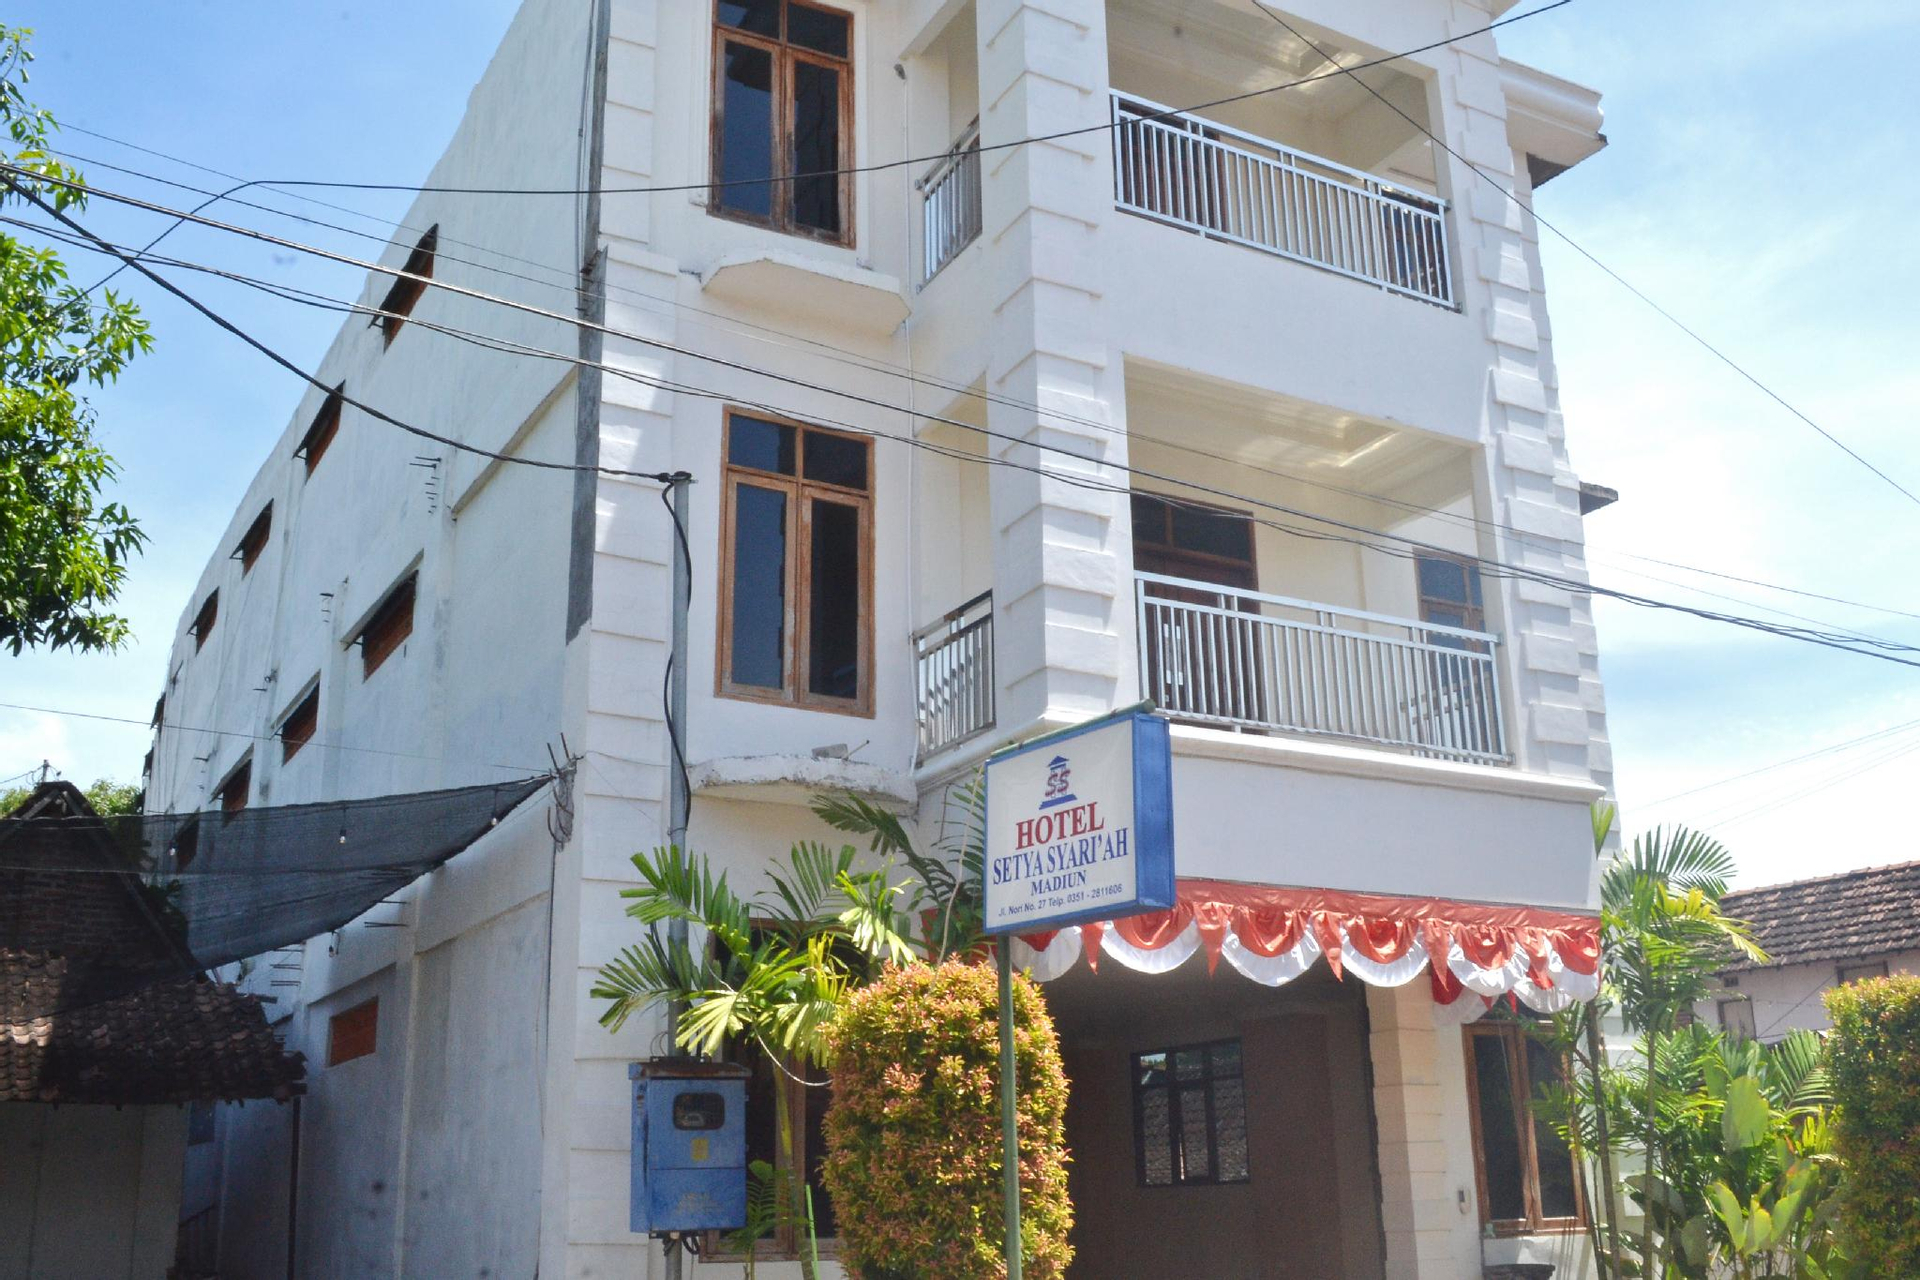 Exterior & Views 1, HOTEL SETYA SYARIAH, Madiun